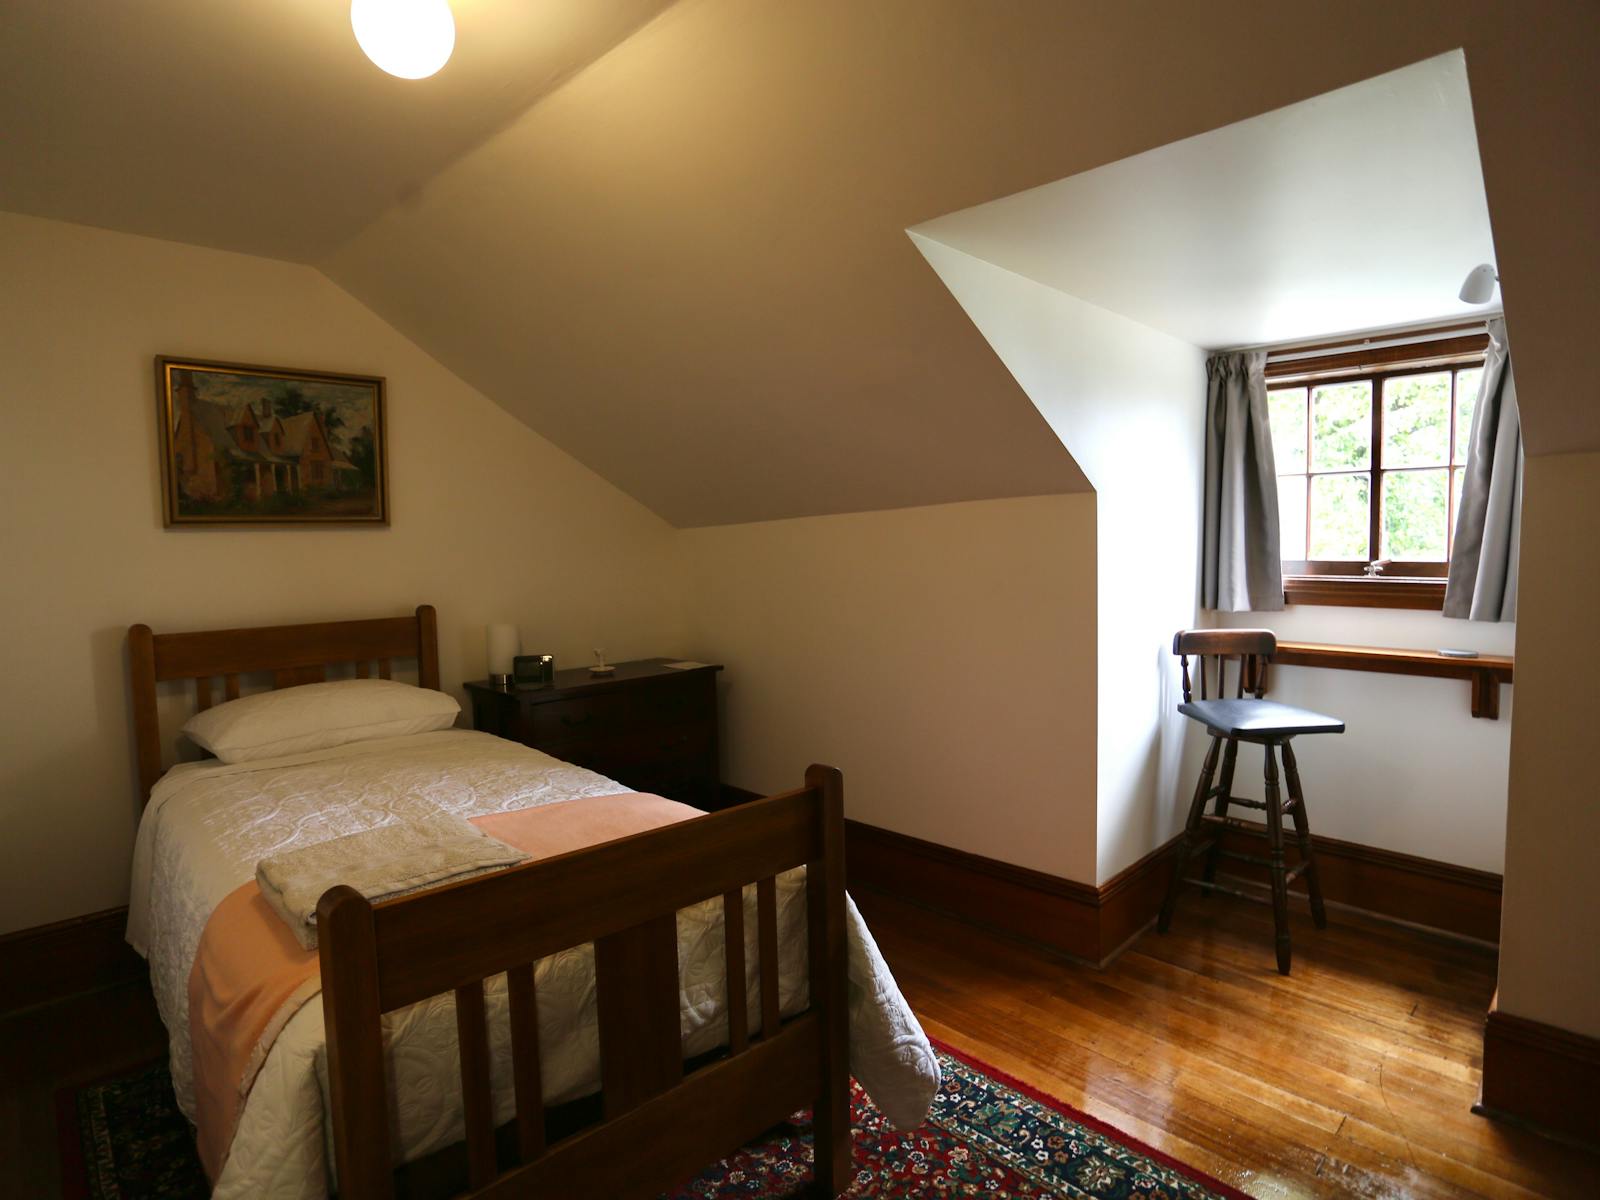 single bed in  bedroom with dormer window